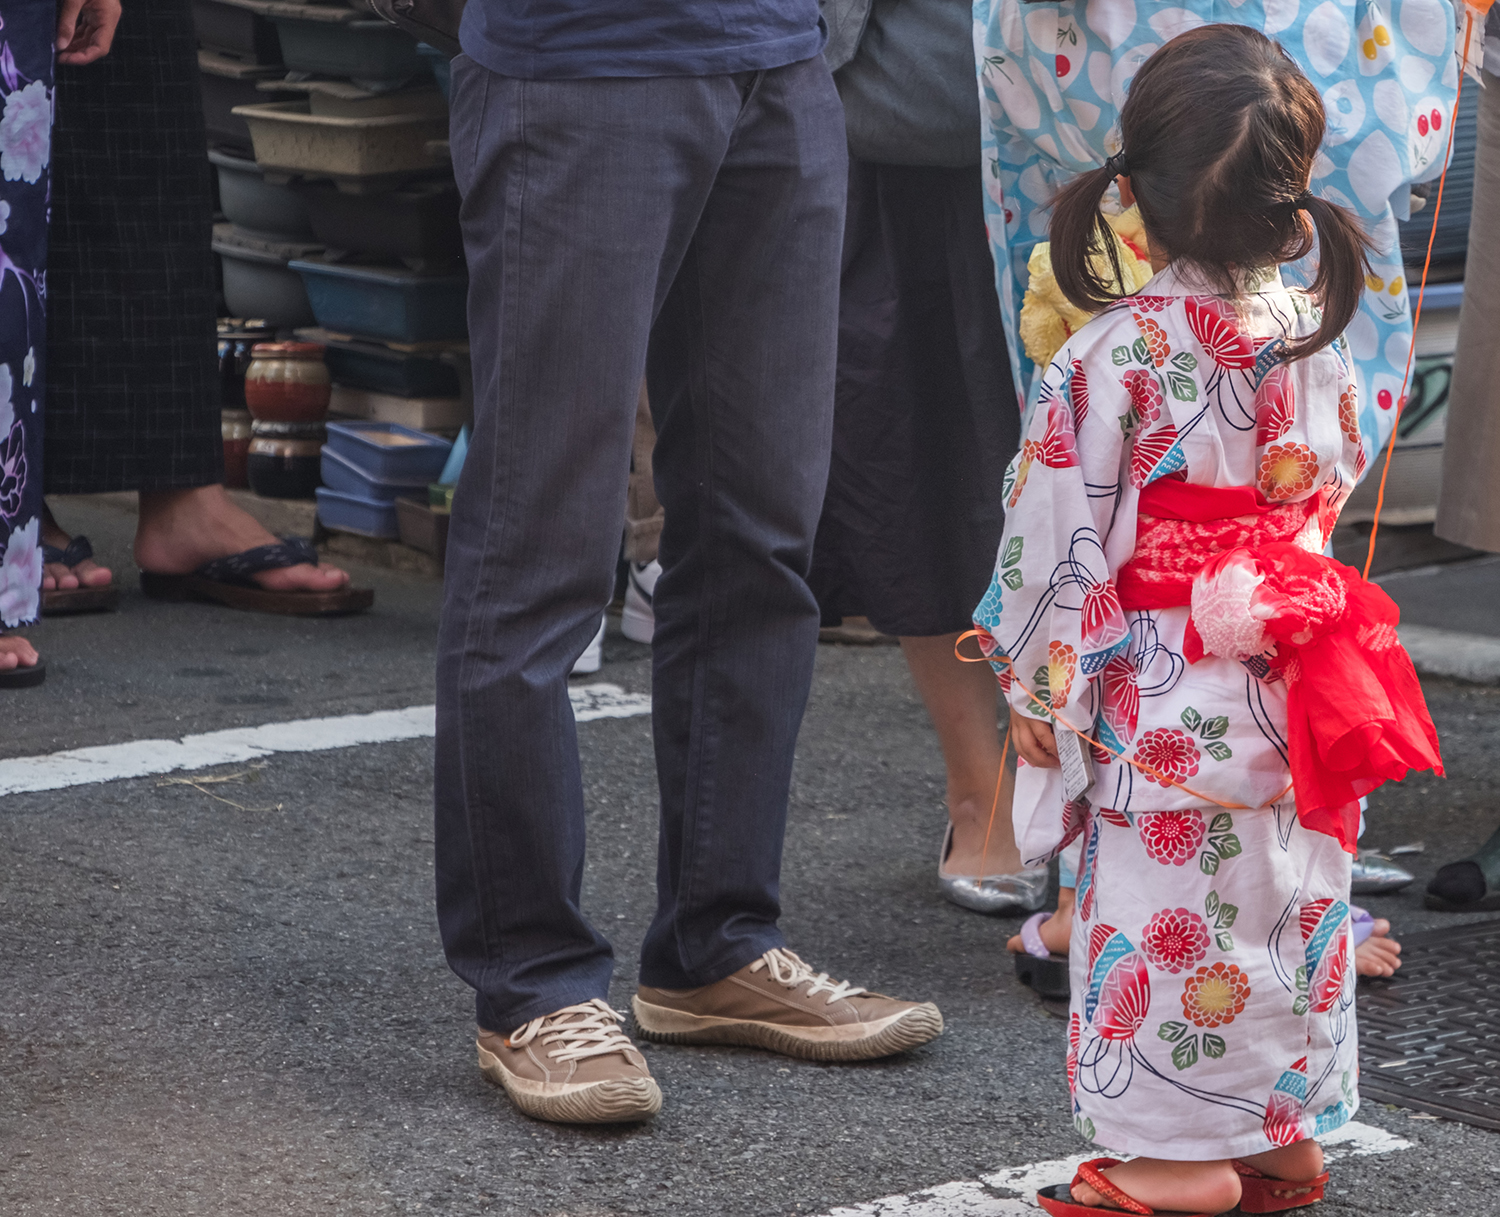 Kids in kimonos, Japan